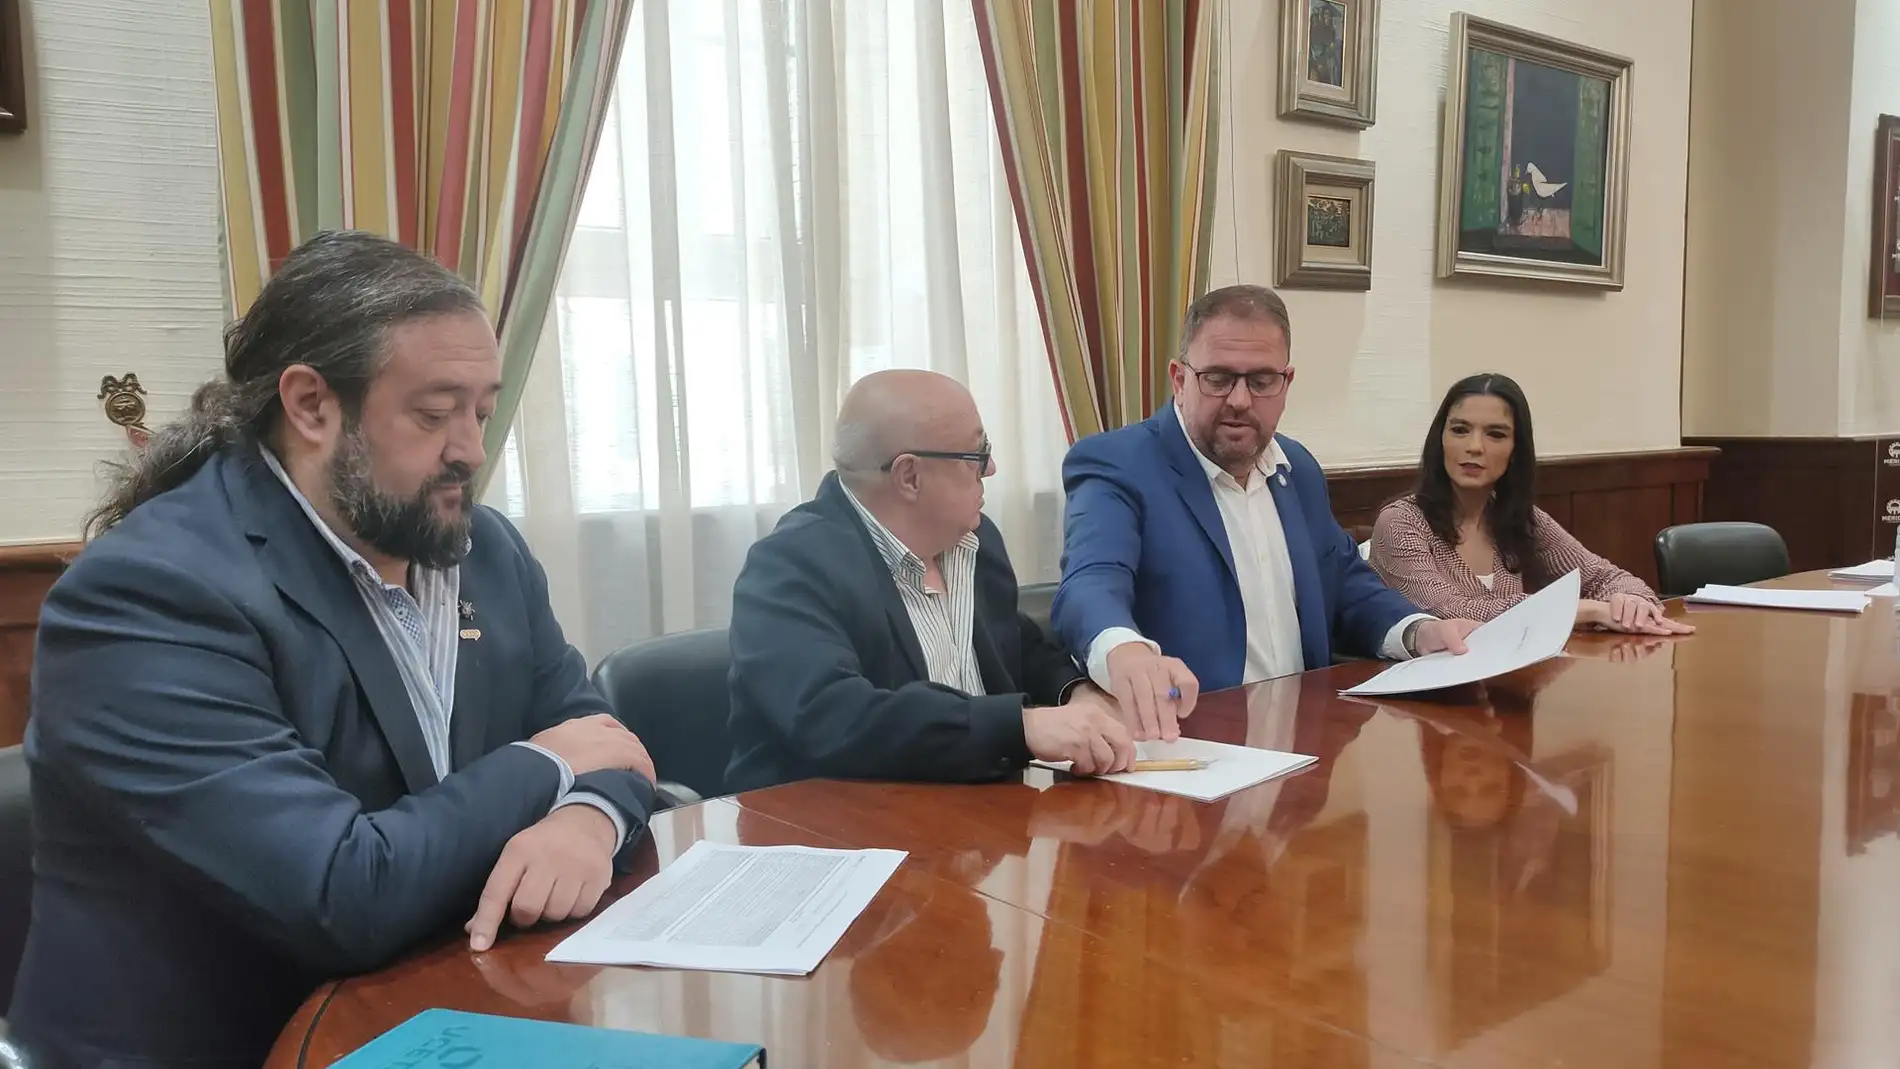 José Antonio López, Miguel Ángel Herrera, Antonio Rodríguez Osuna y Pilar Amor, en la firma del convenio entre el Ayuntamiento de Mérida y Uceta